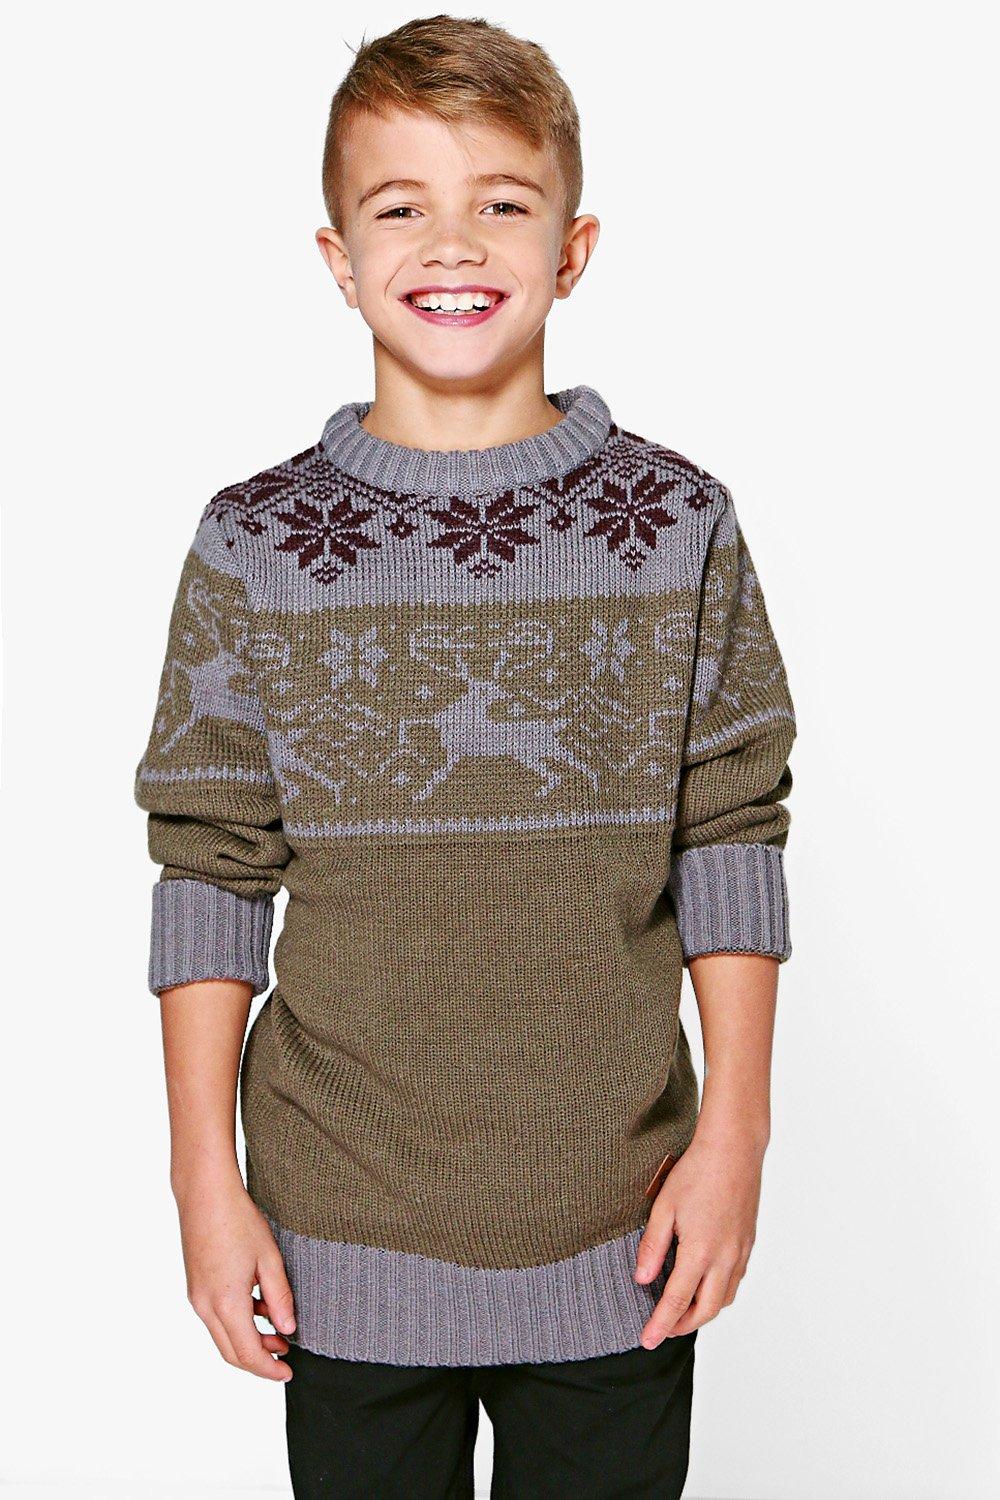 Boohoo Mens Boys Knitted Winter Jumper | eBay